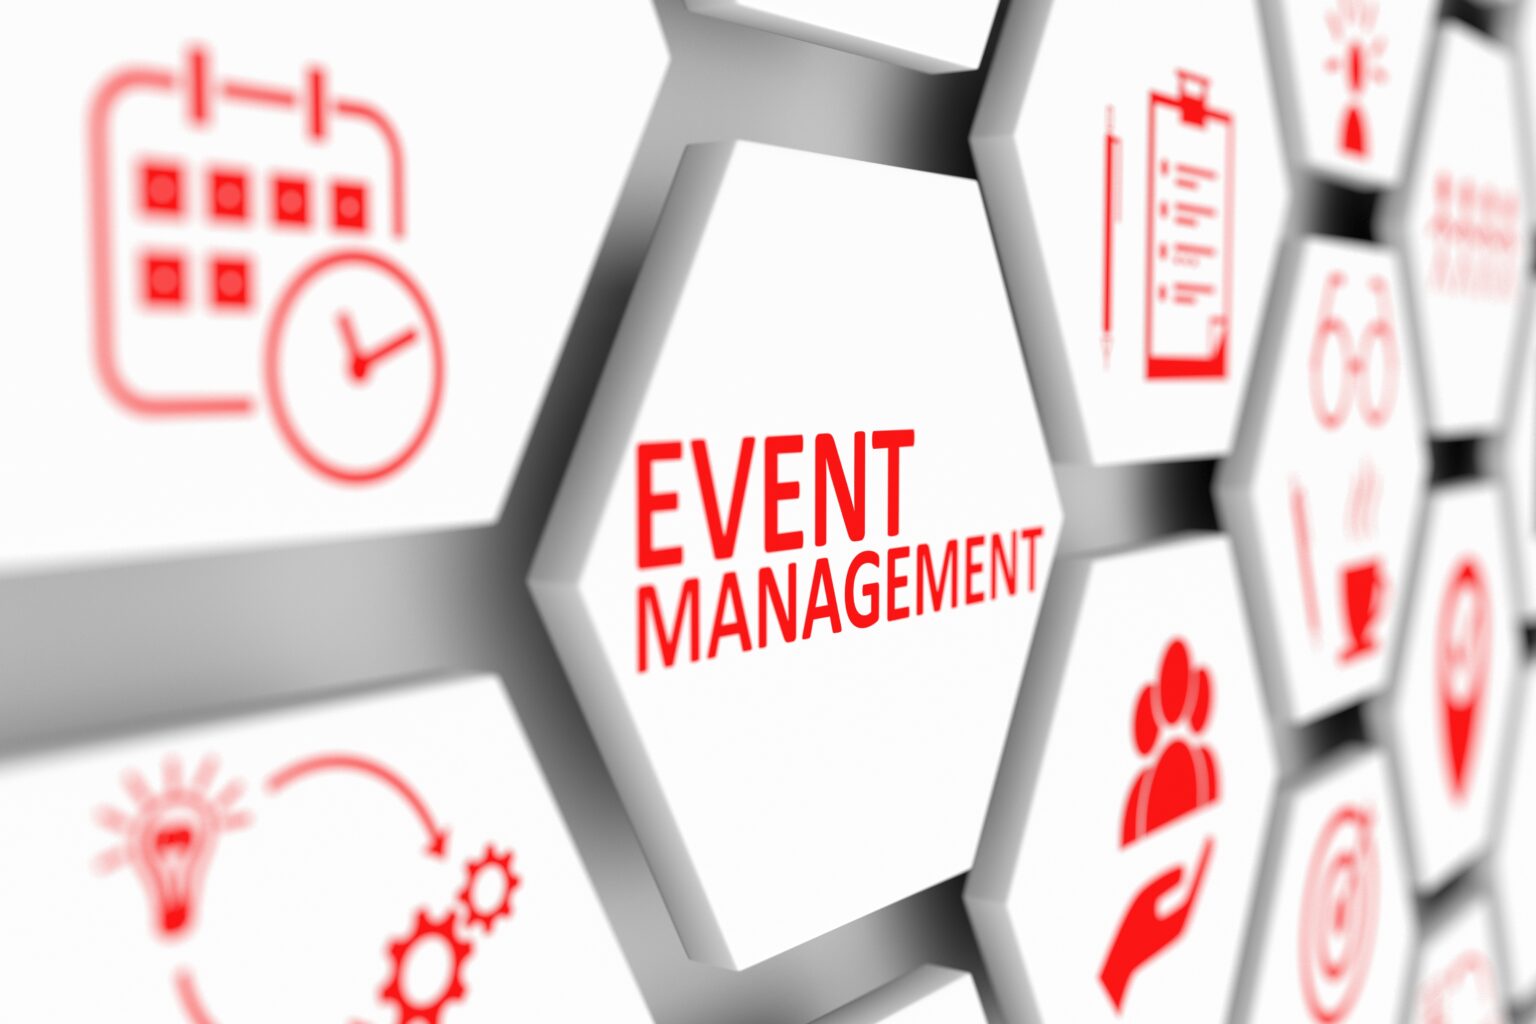 automate event management process